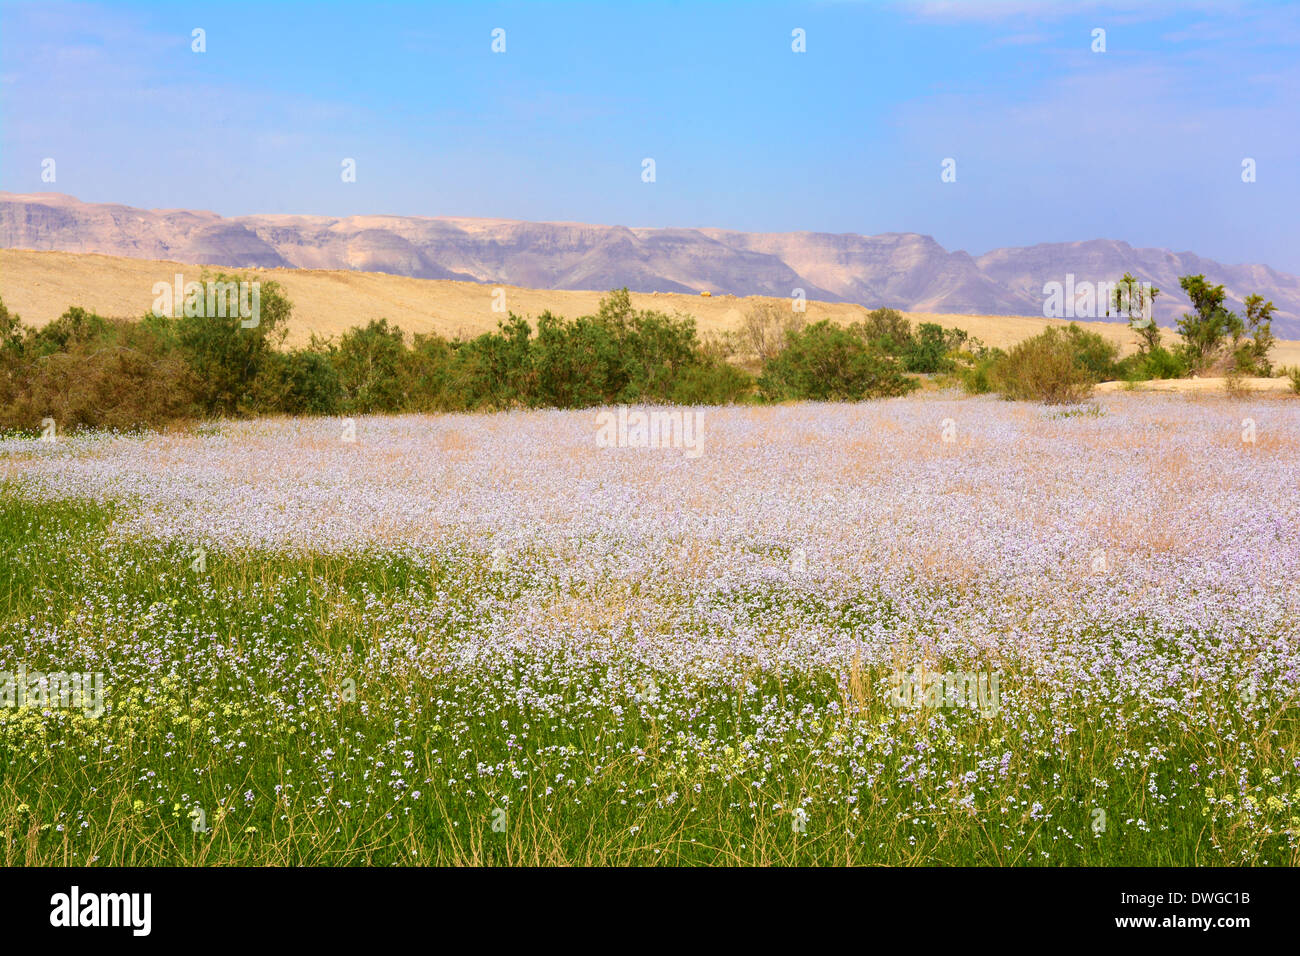 El tiempo de primavera cerca del mar Muerto, Israel Foto de stock